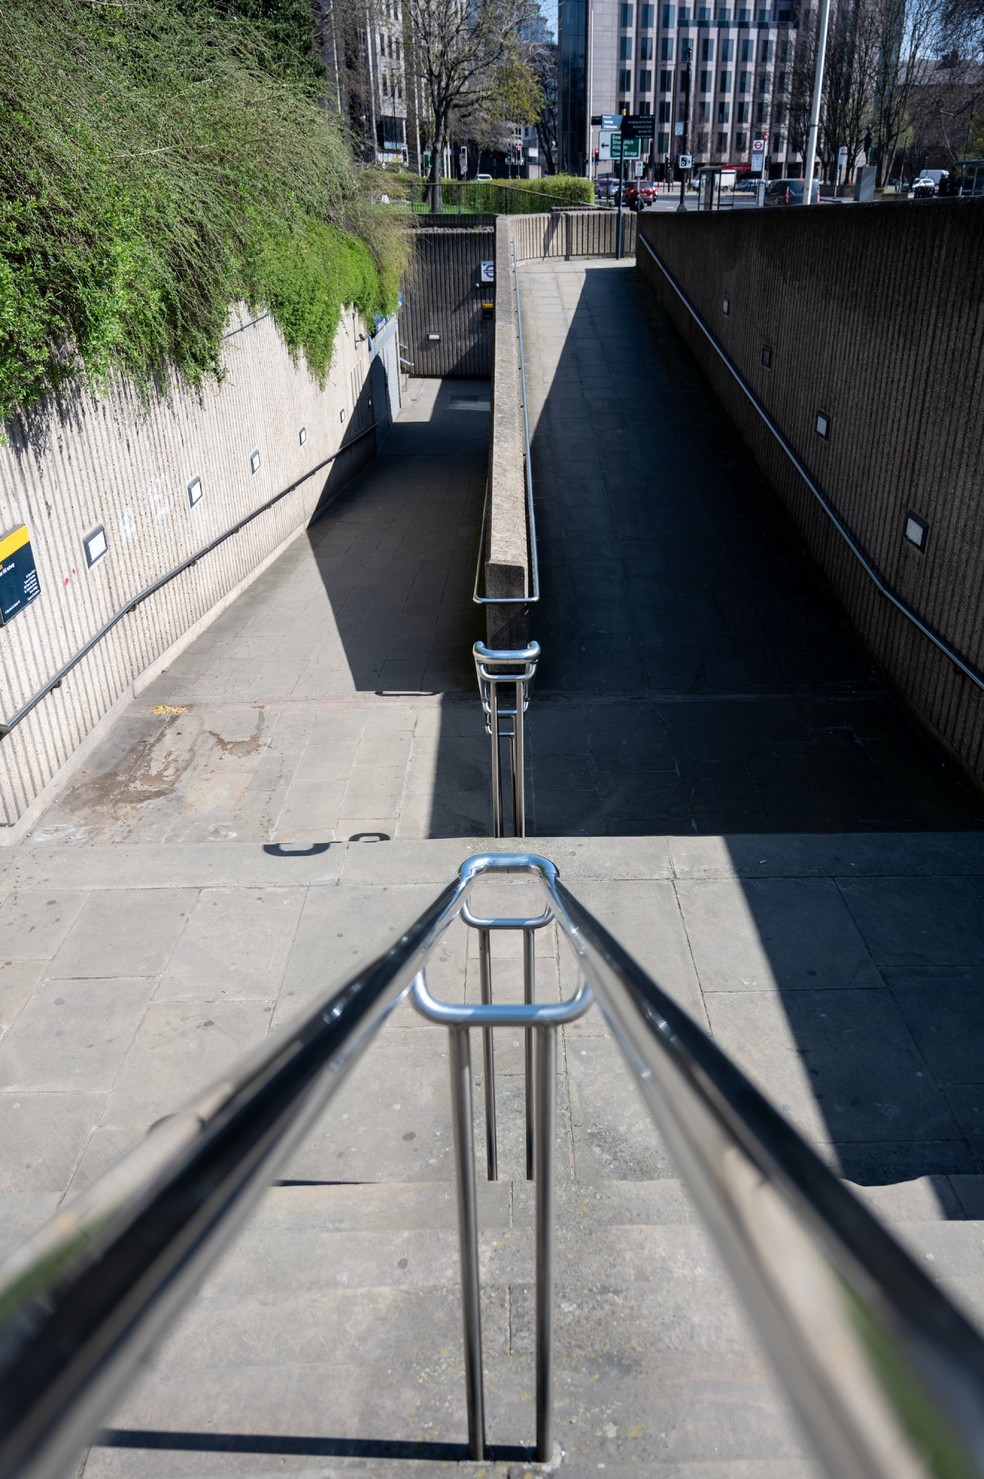 Rampas são elementos da arquitetura que fornecem uma rota mais acessível, segura e confortável àqueles com mobilidade reduzida — Foto: Unsplash / itsharryshelton / CreativeCommons